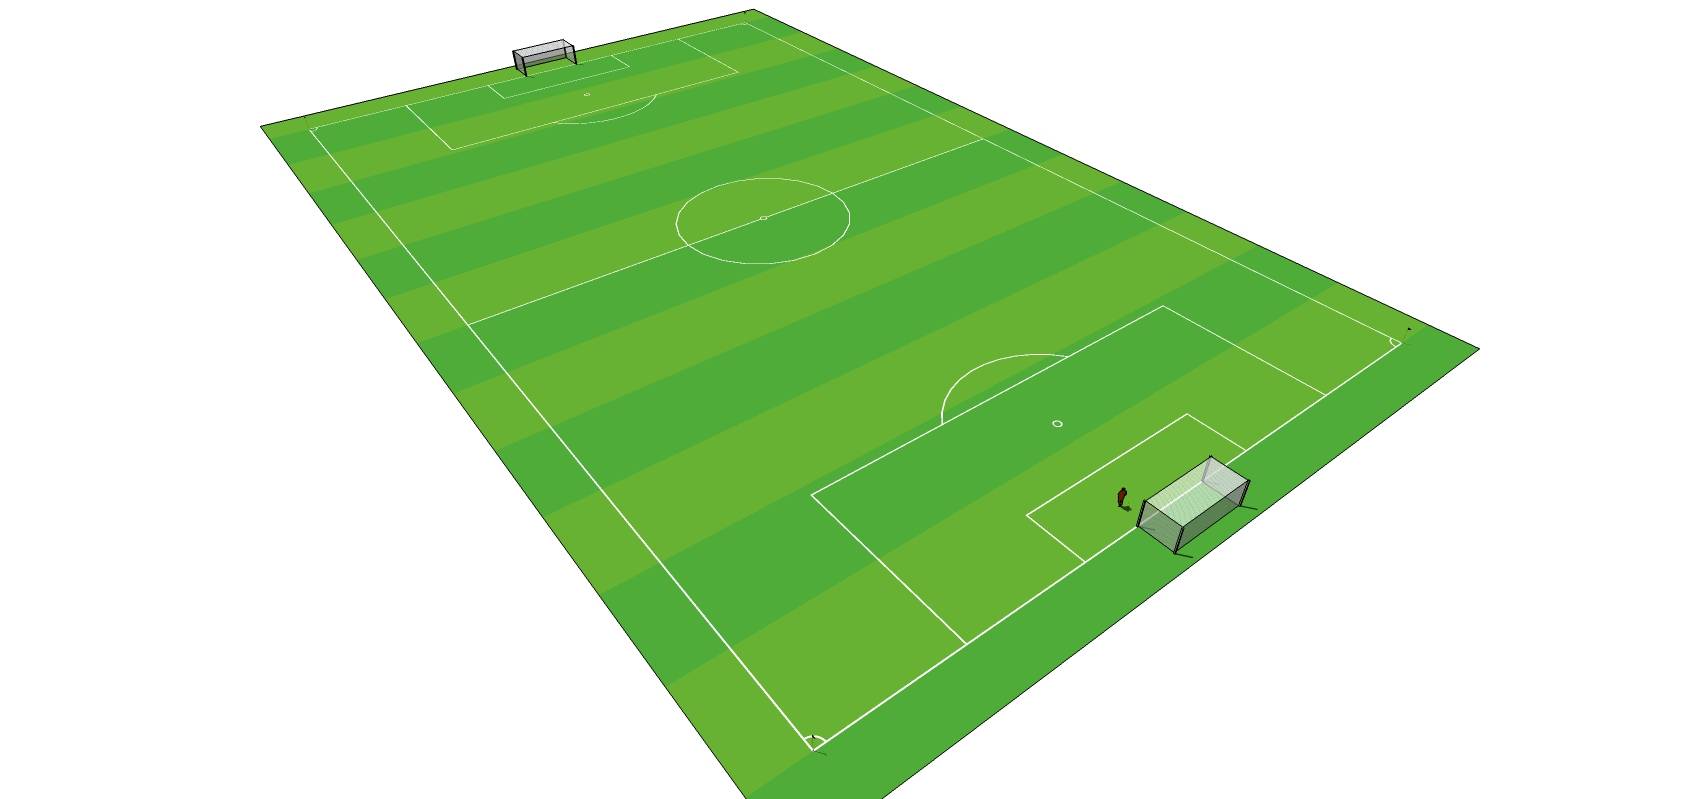 足球场CAD施工图下载、足球场dwg文件下载 - 易图网